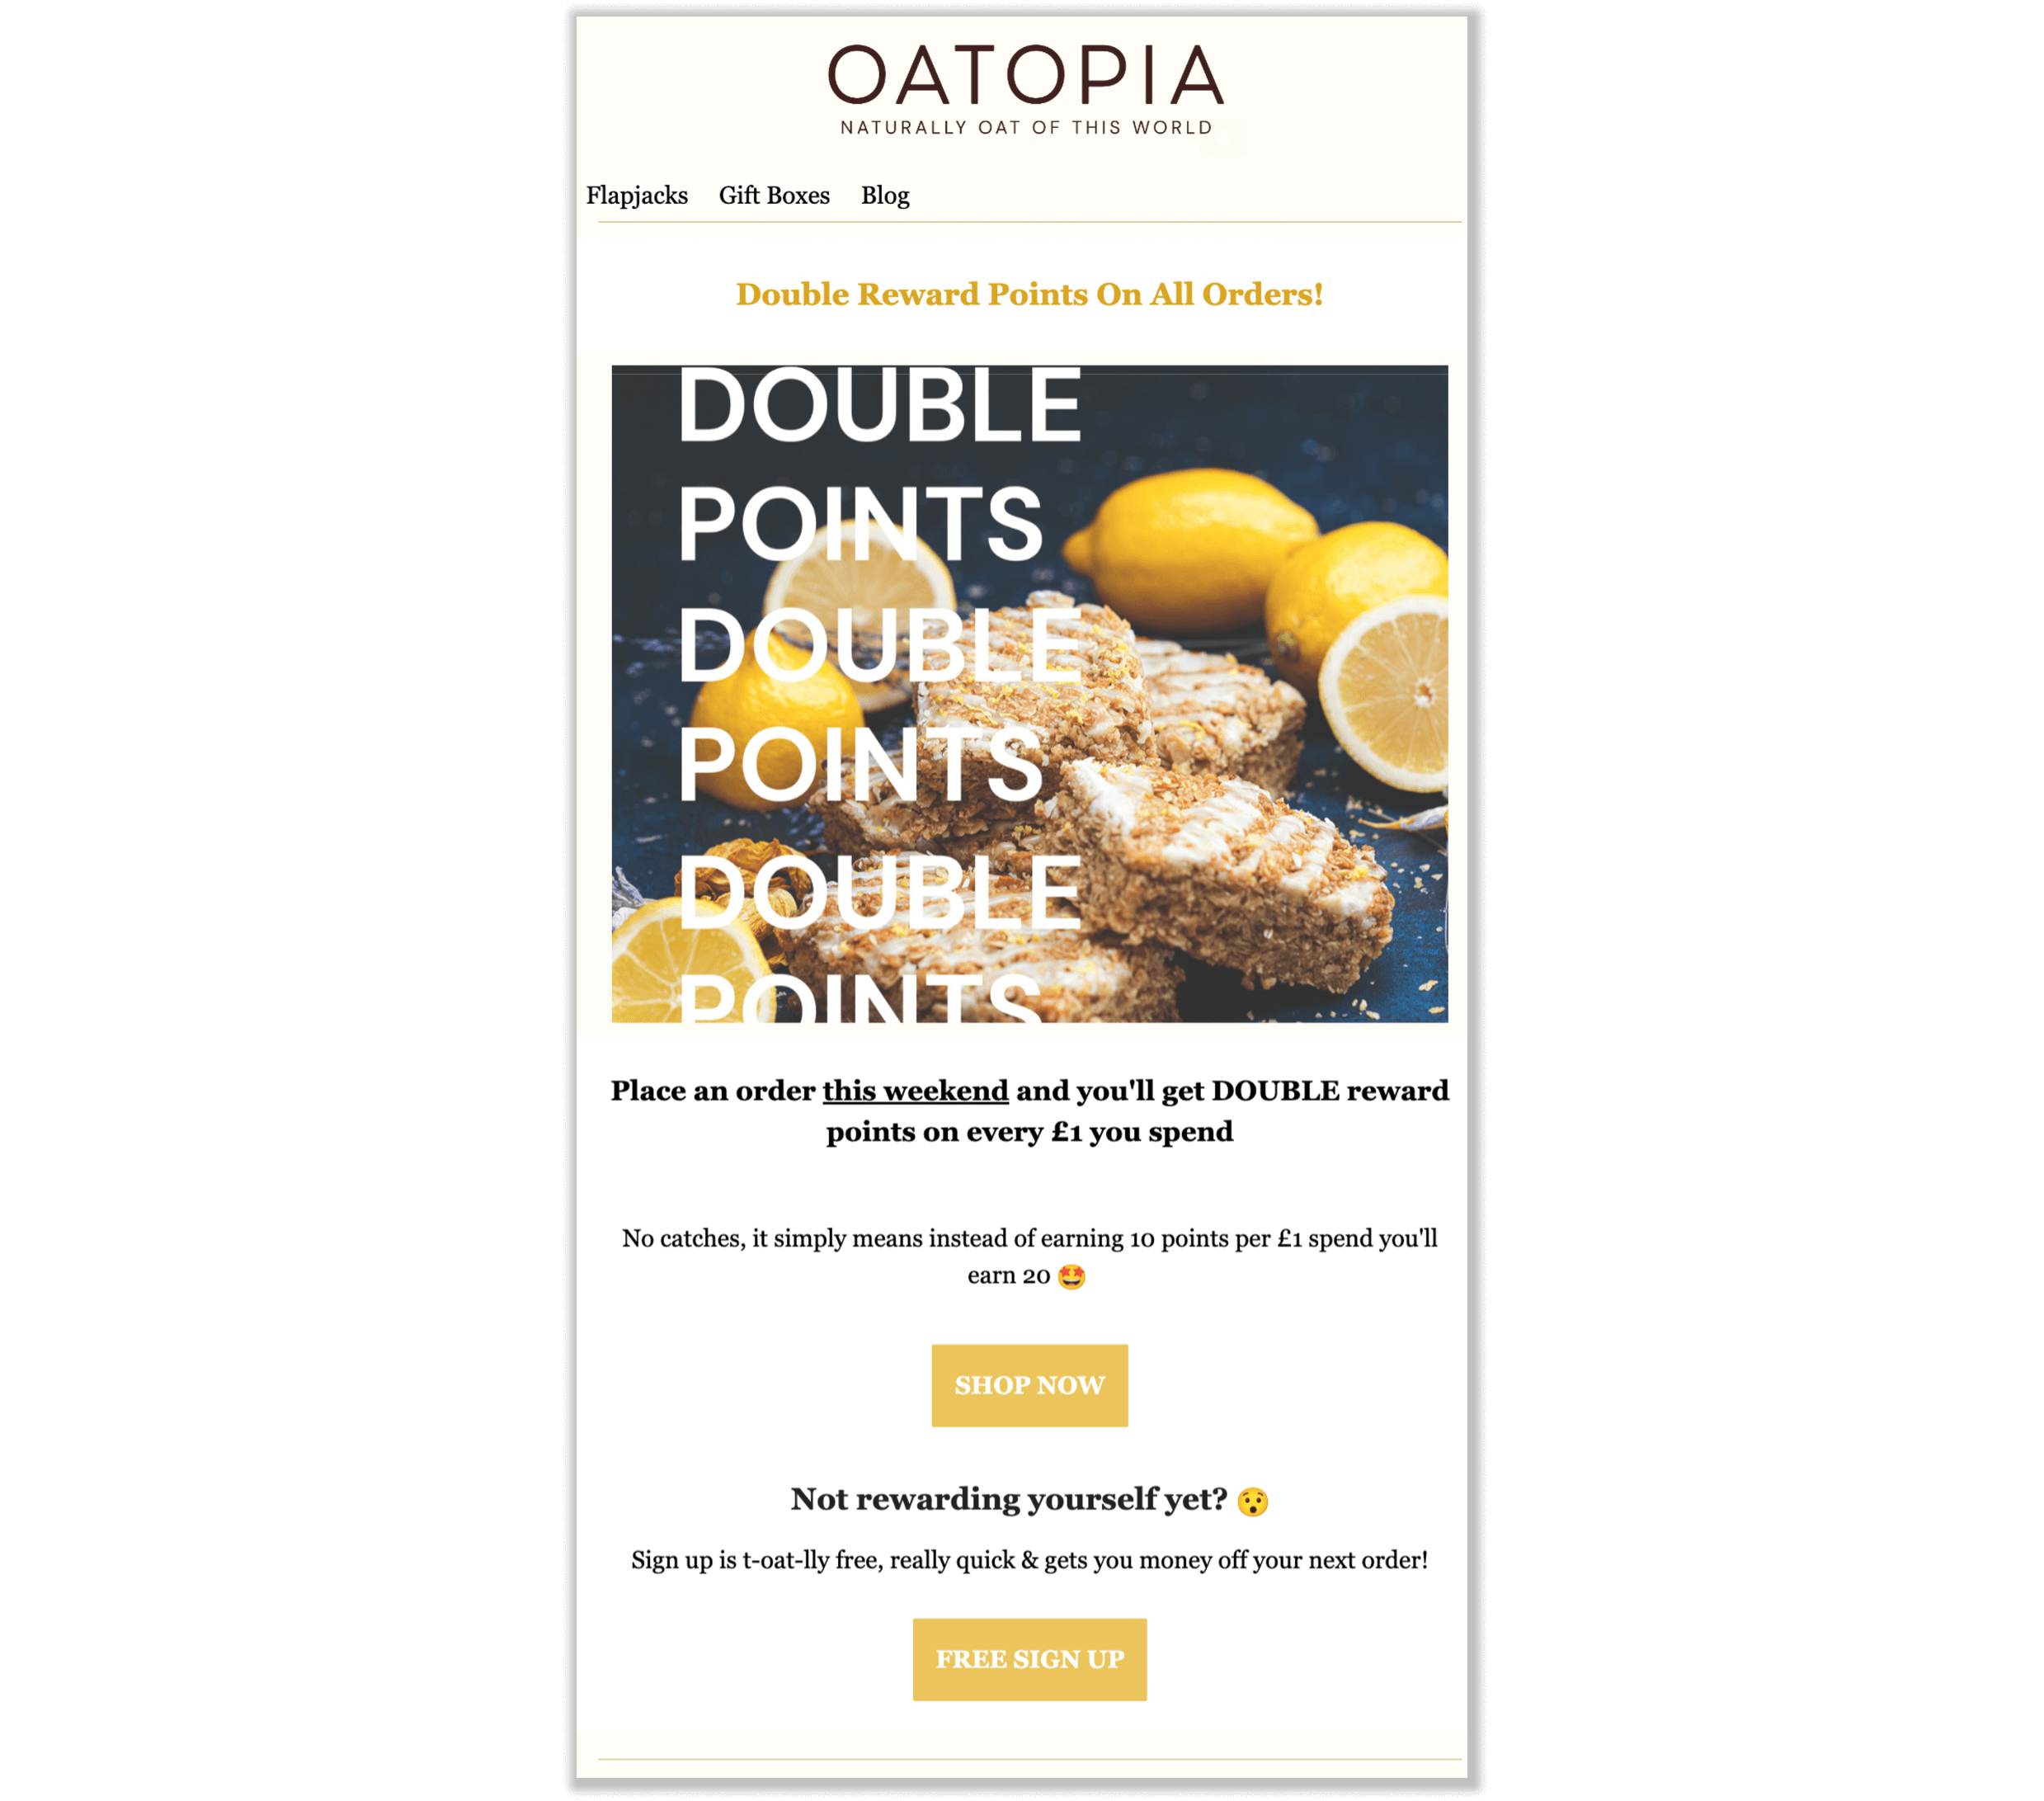 Oatopia 解釋其獎勵積分活動的電子郵件螢幕截圖。一封品牌電子郵件解釋說，客戶在該週末每消費 1 英鎊即可獲得雙倍獎勵積分。